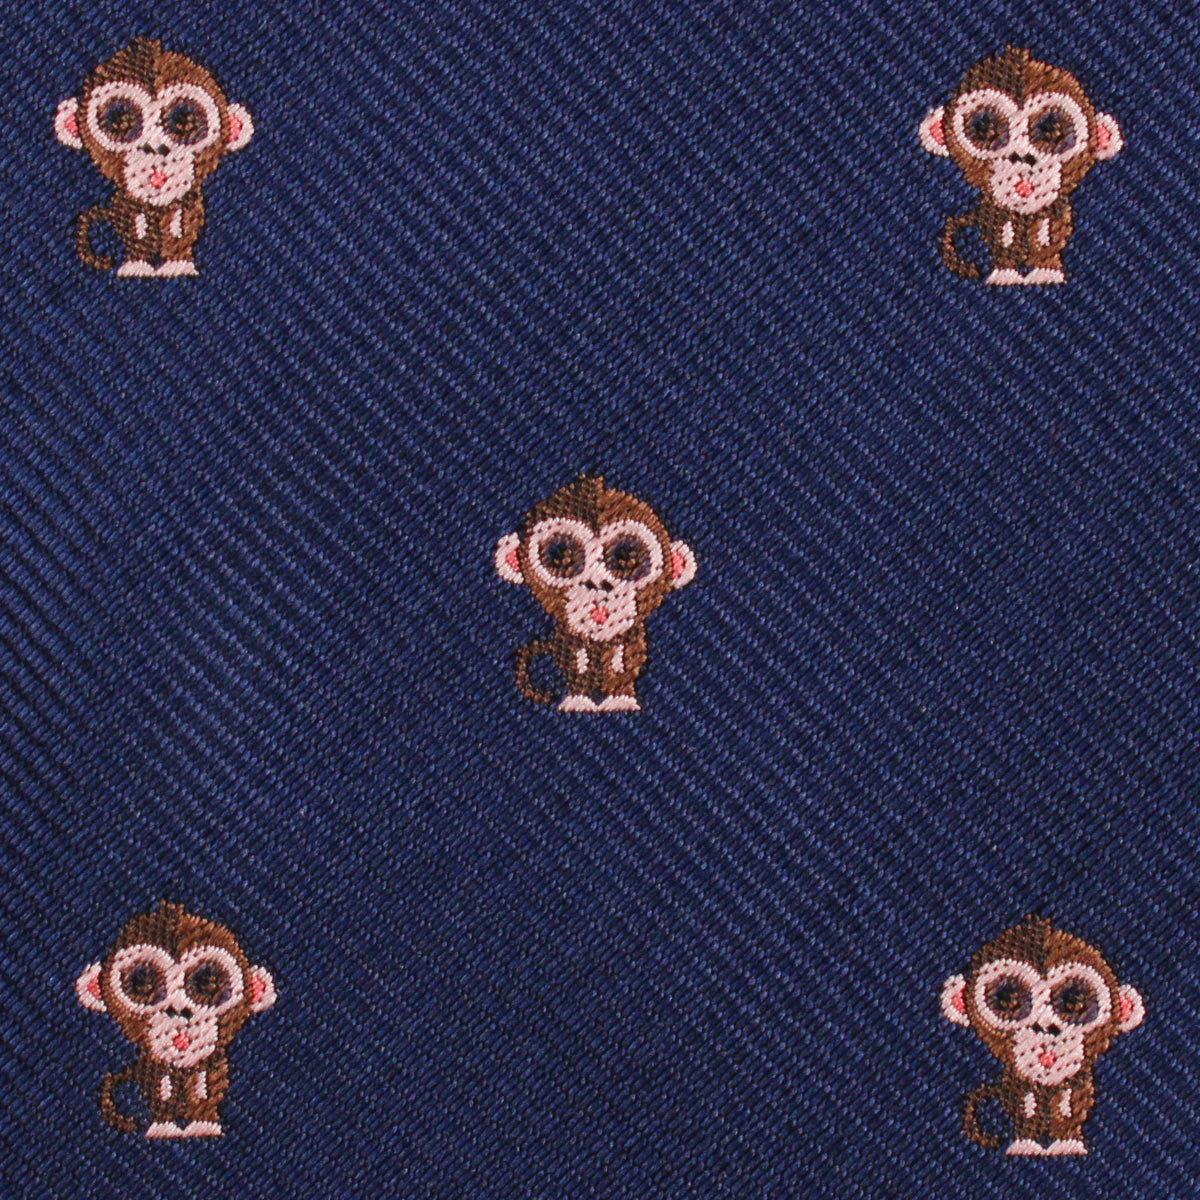 Monkey Fabric Pocket Square